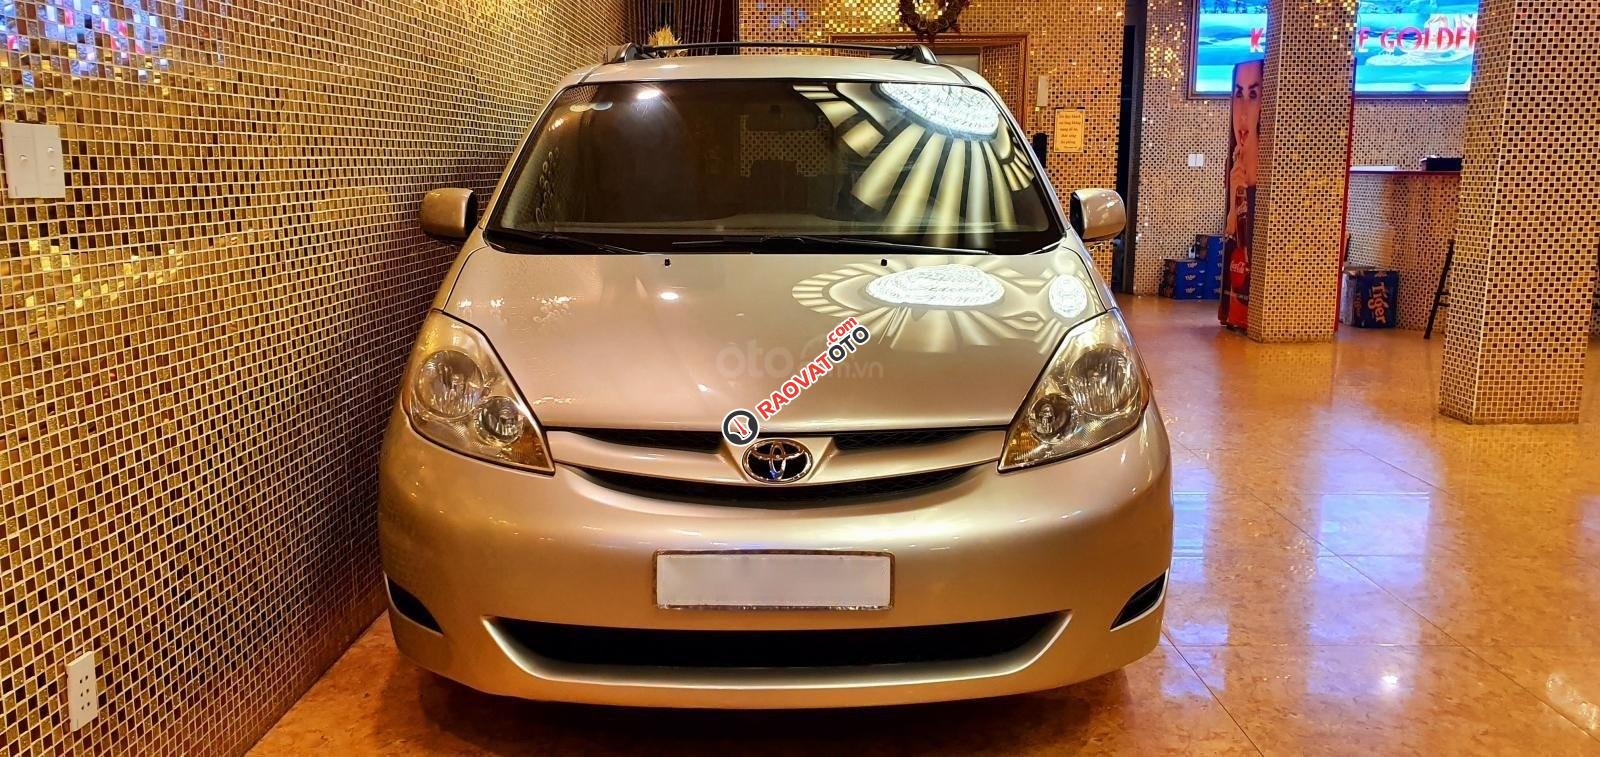 Cần bán xe Toyota Sienna LE sản xuất năm 2008, màu vàng cát, số tự động-9